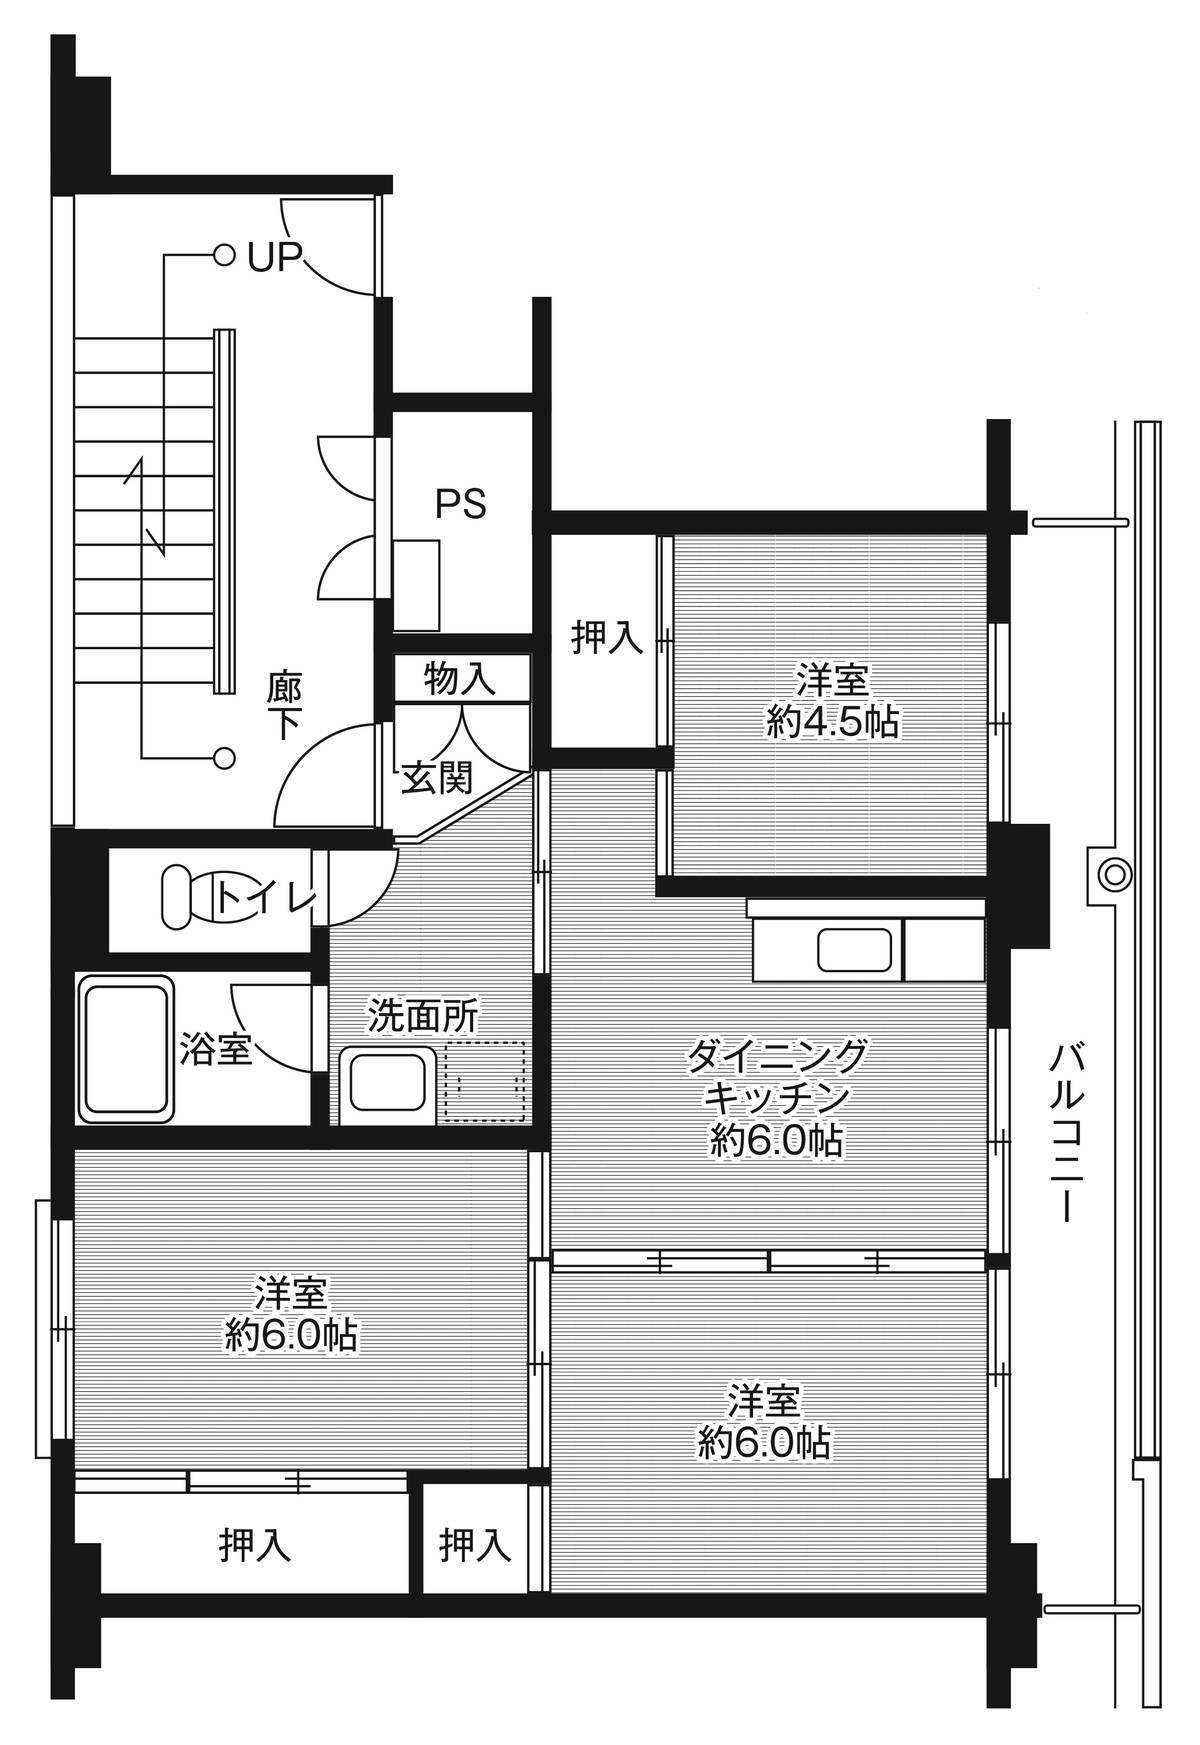 Sơ đồ phòng 3DK của Village House Ushizu ở Ogi-shi